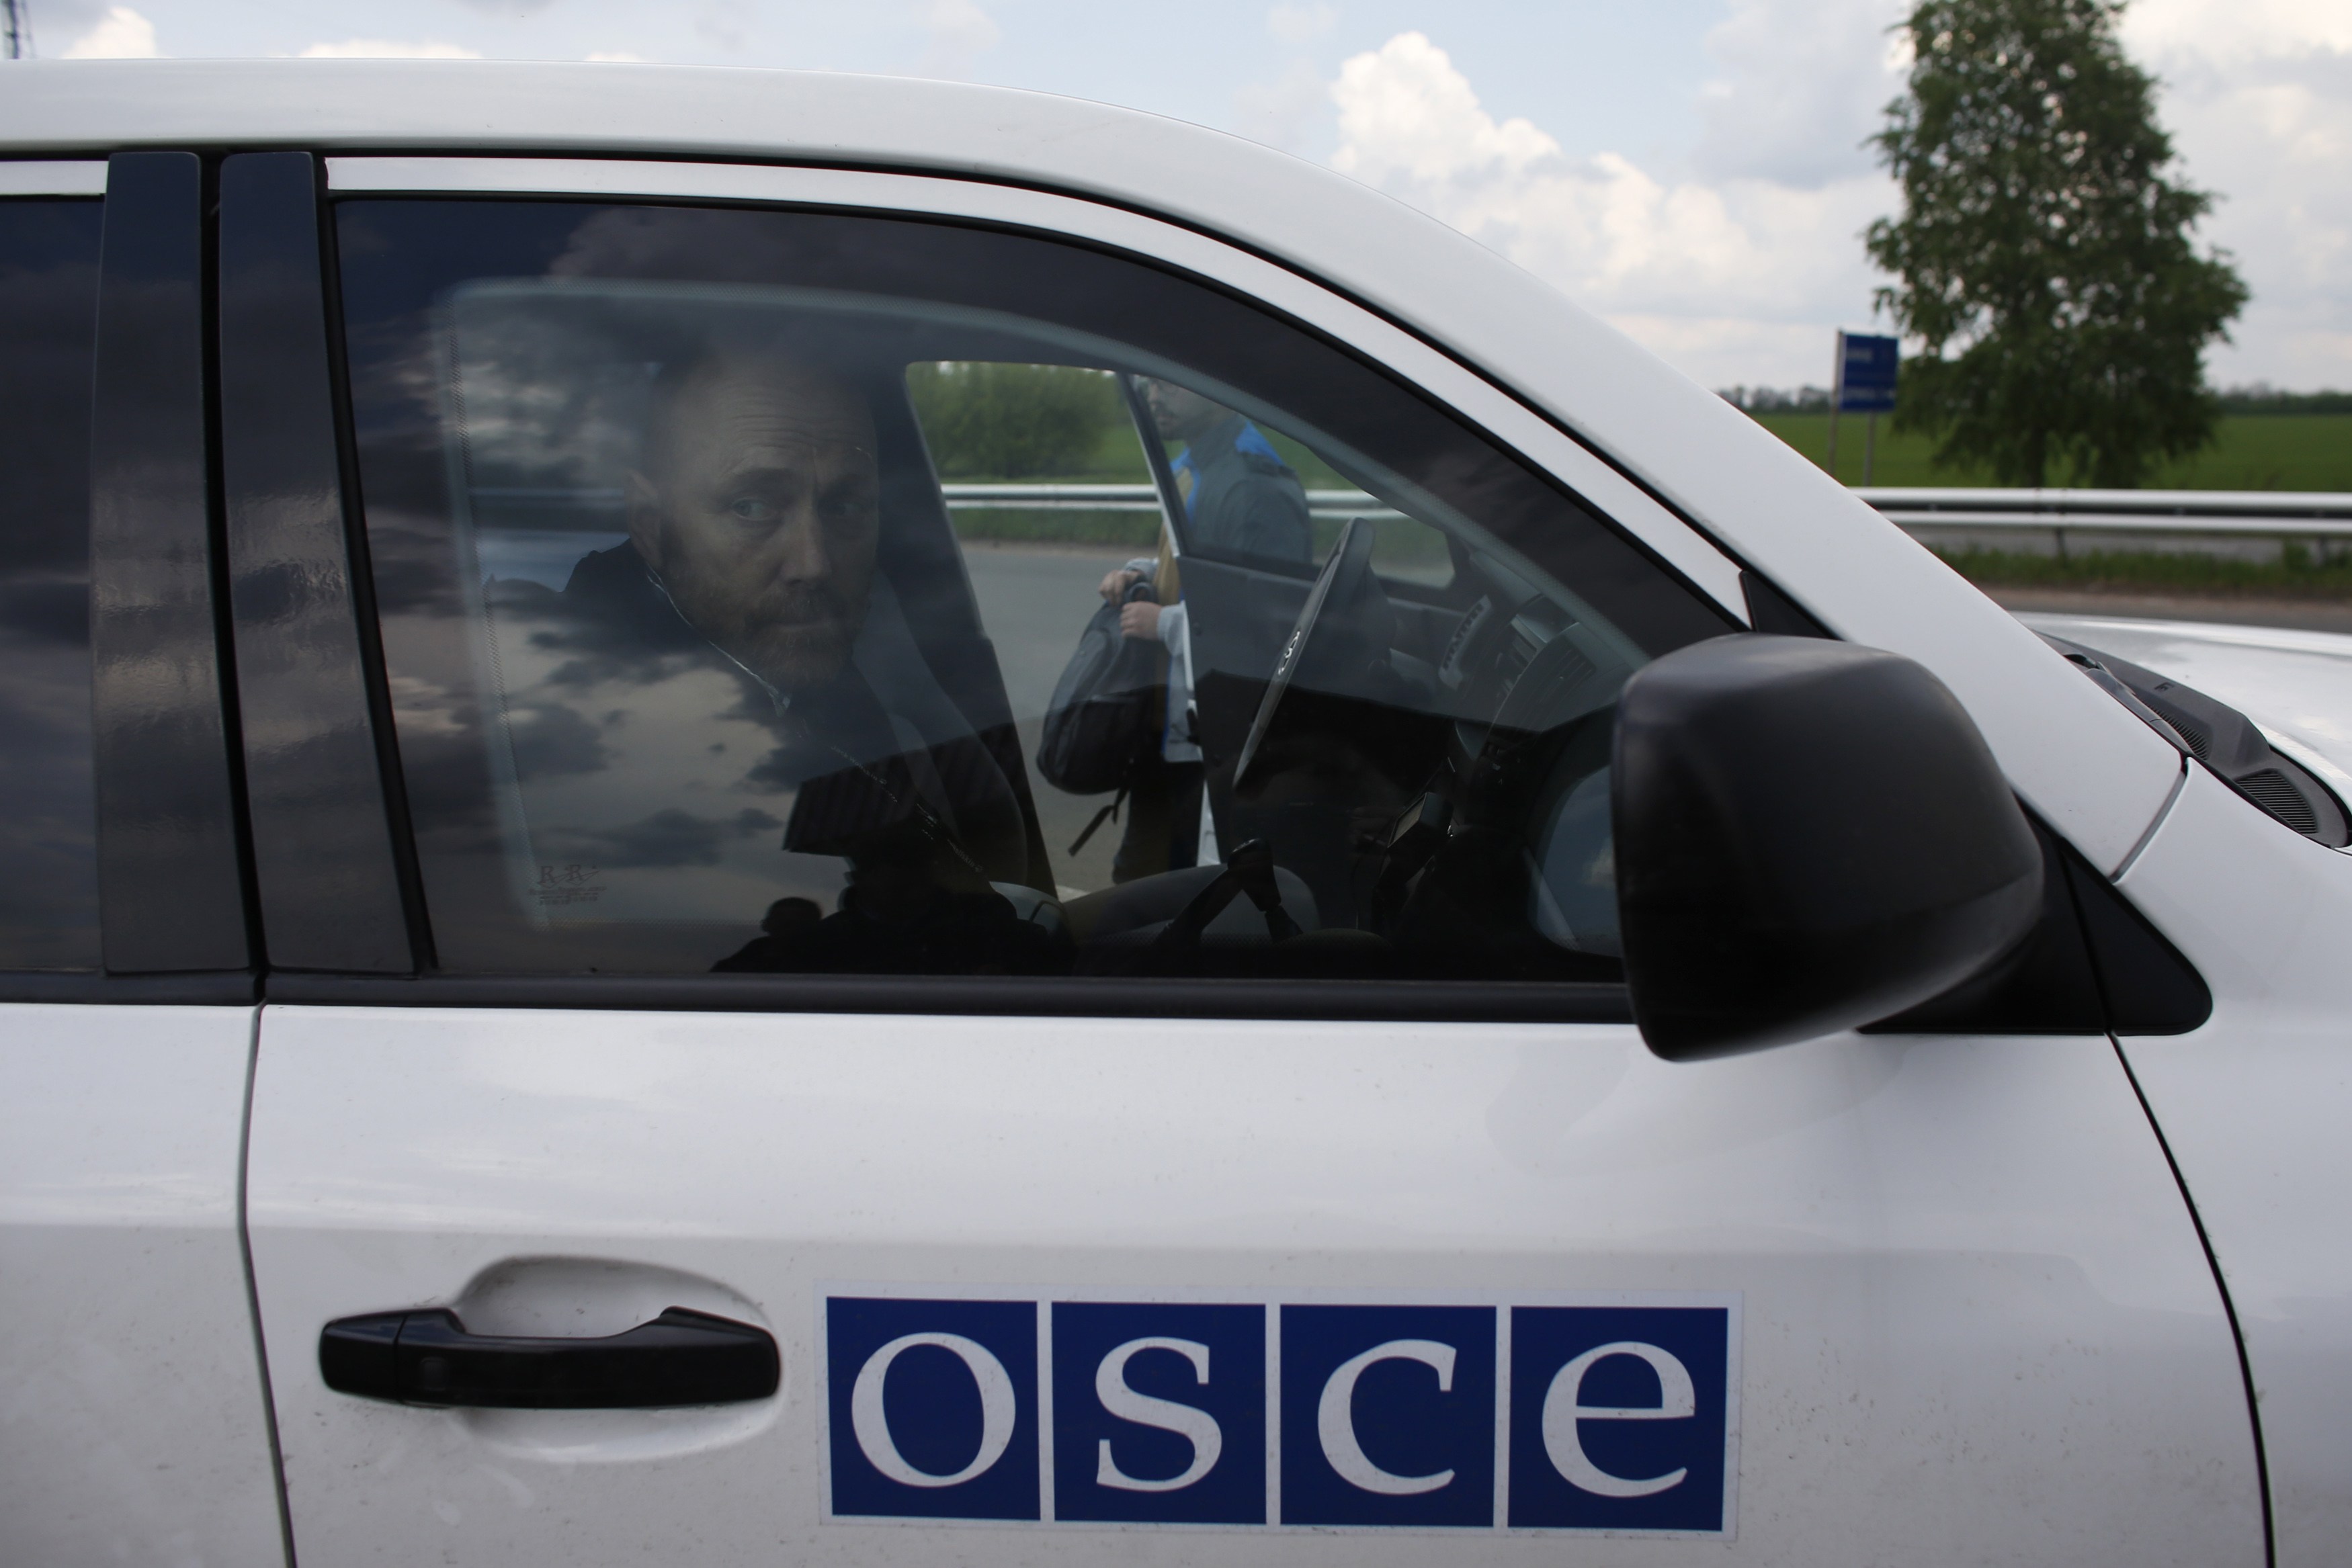 ОБСЕ проведет мониторинг линии соприкосновения вооруженных сил Арцаха и Азербайджана